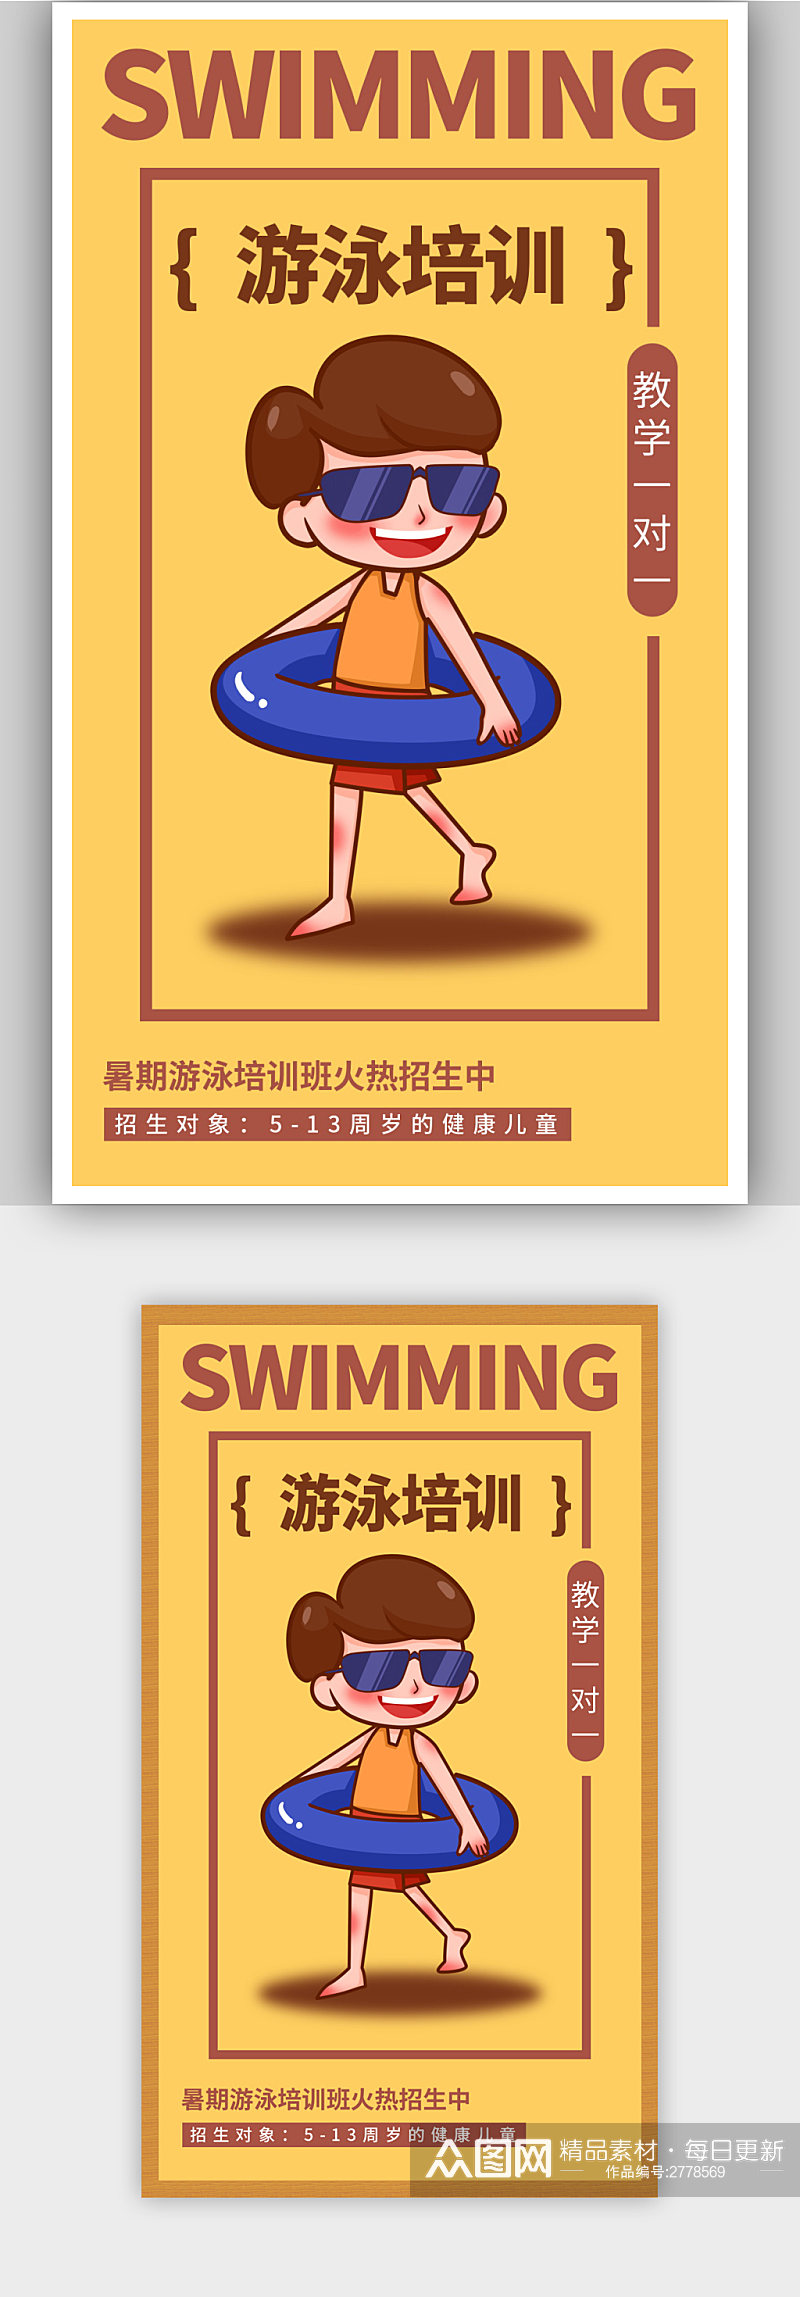 黄色简约游泳培训招生宣传海报素材